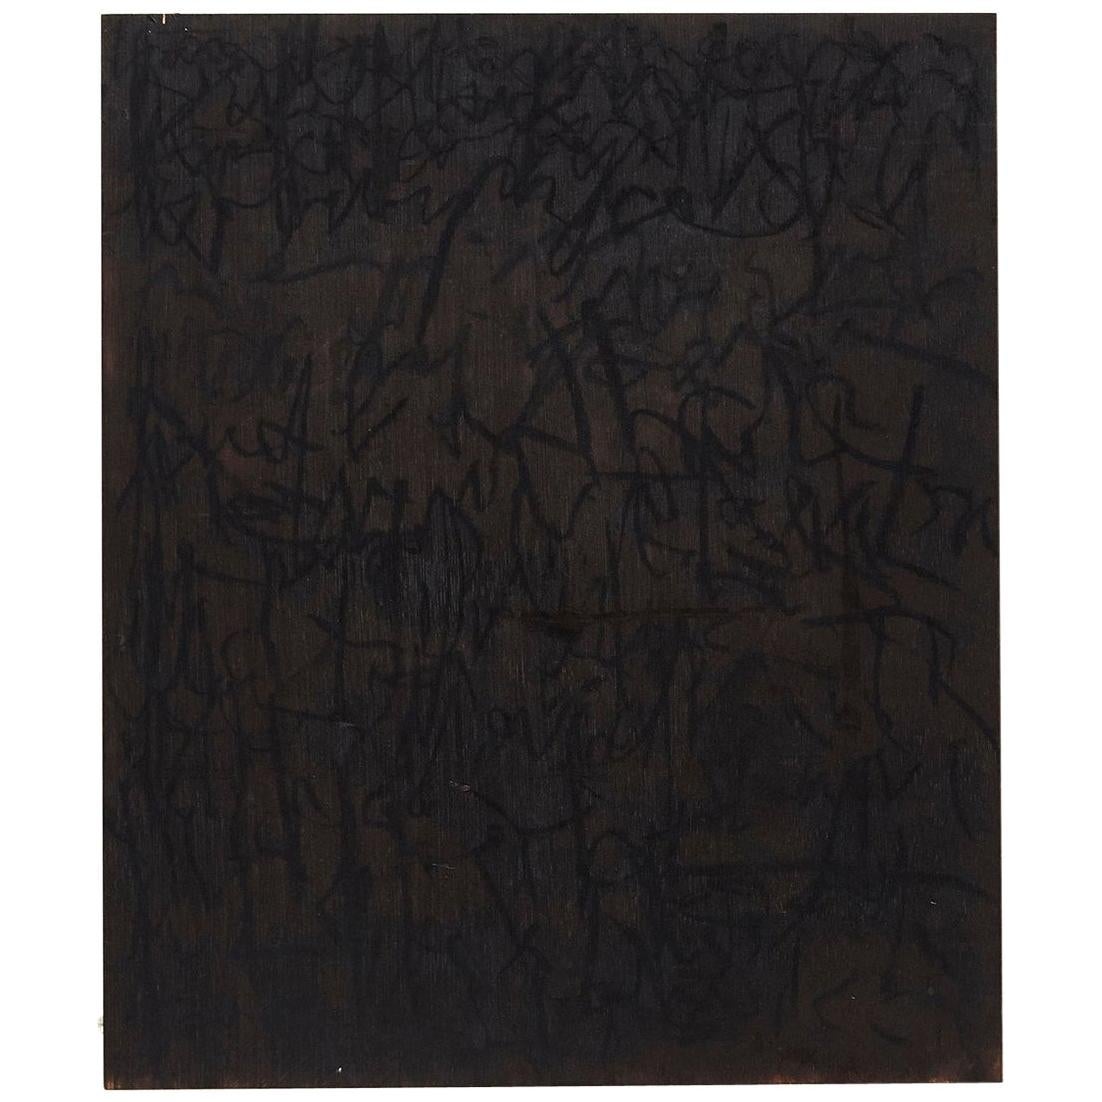 Peinture abstraite contemporaine sur bois, Adrian, 2018